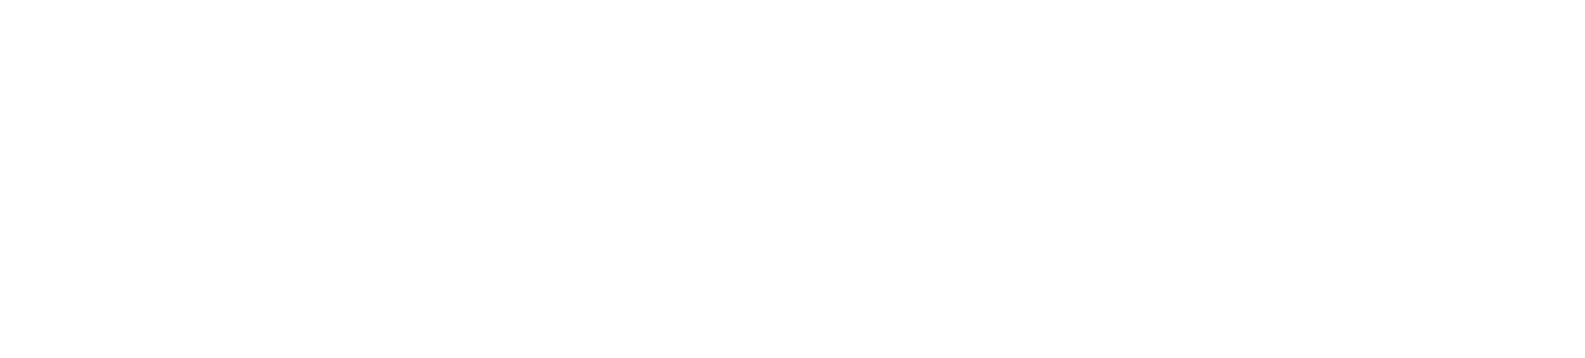 ALBA SE logo large for dark backgrounds (transparent PNG)